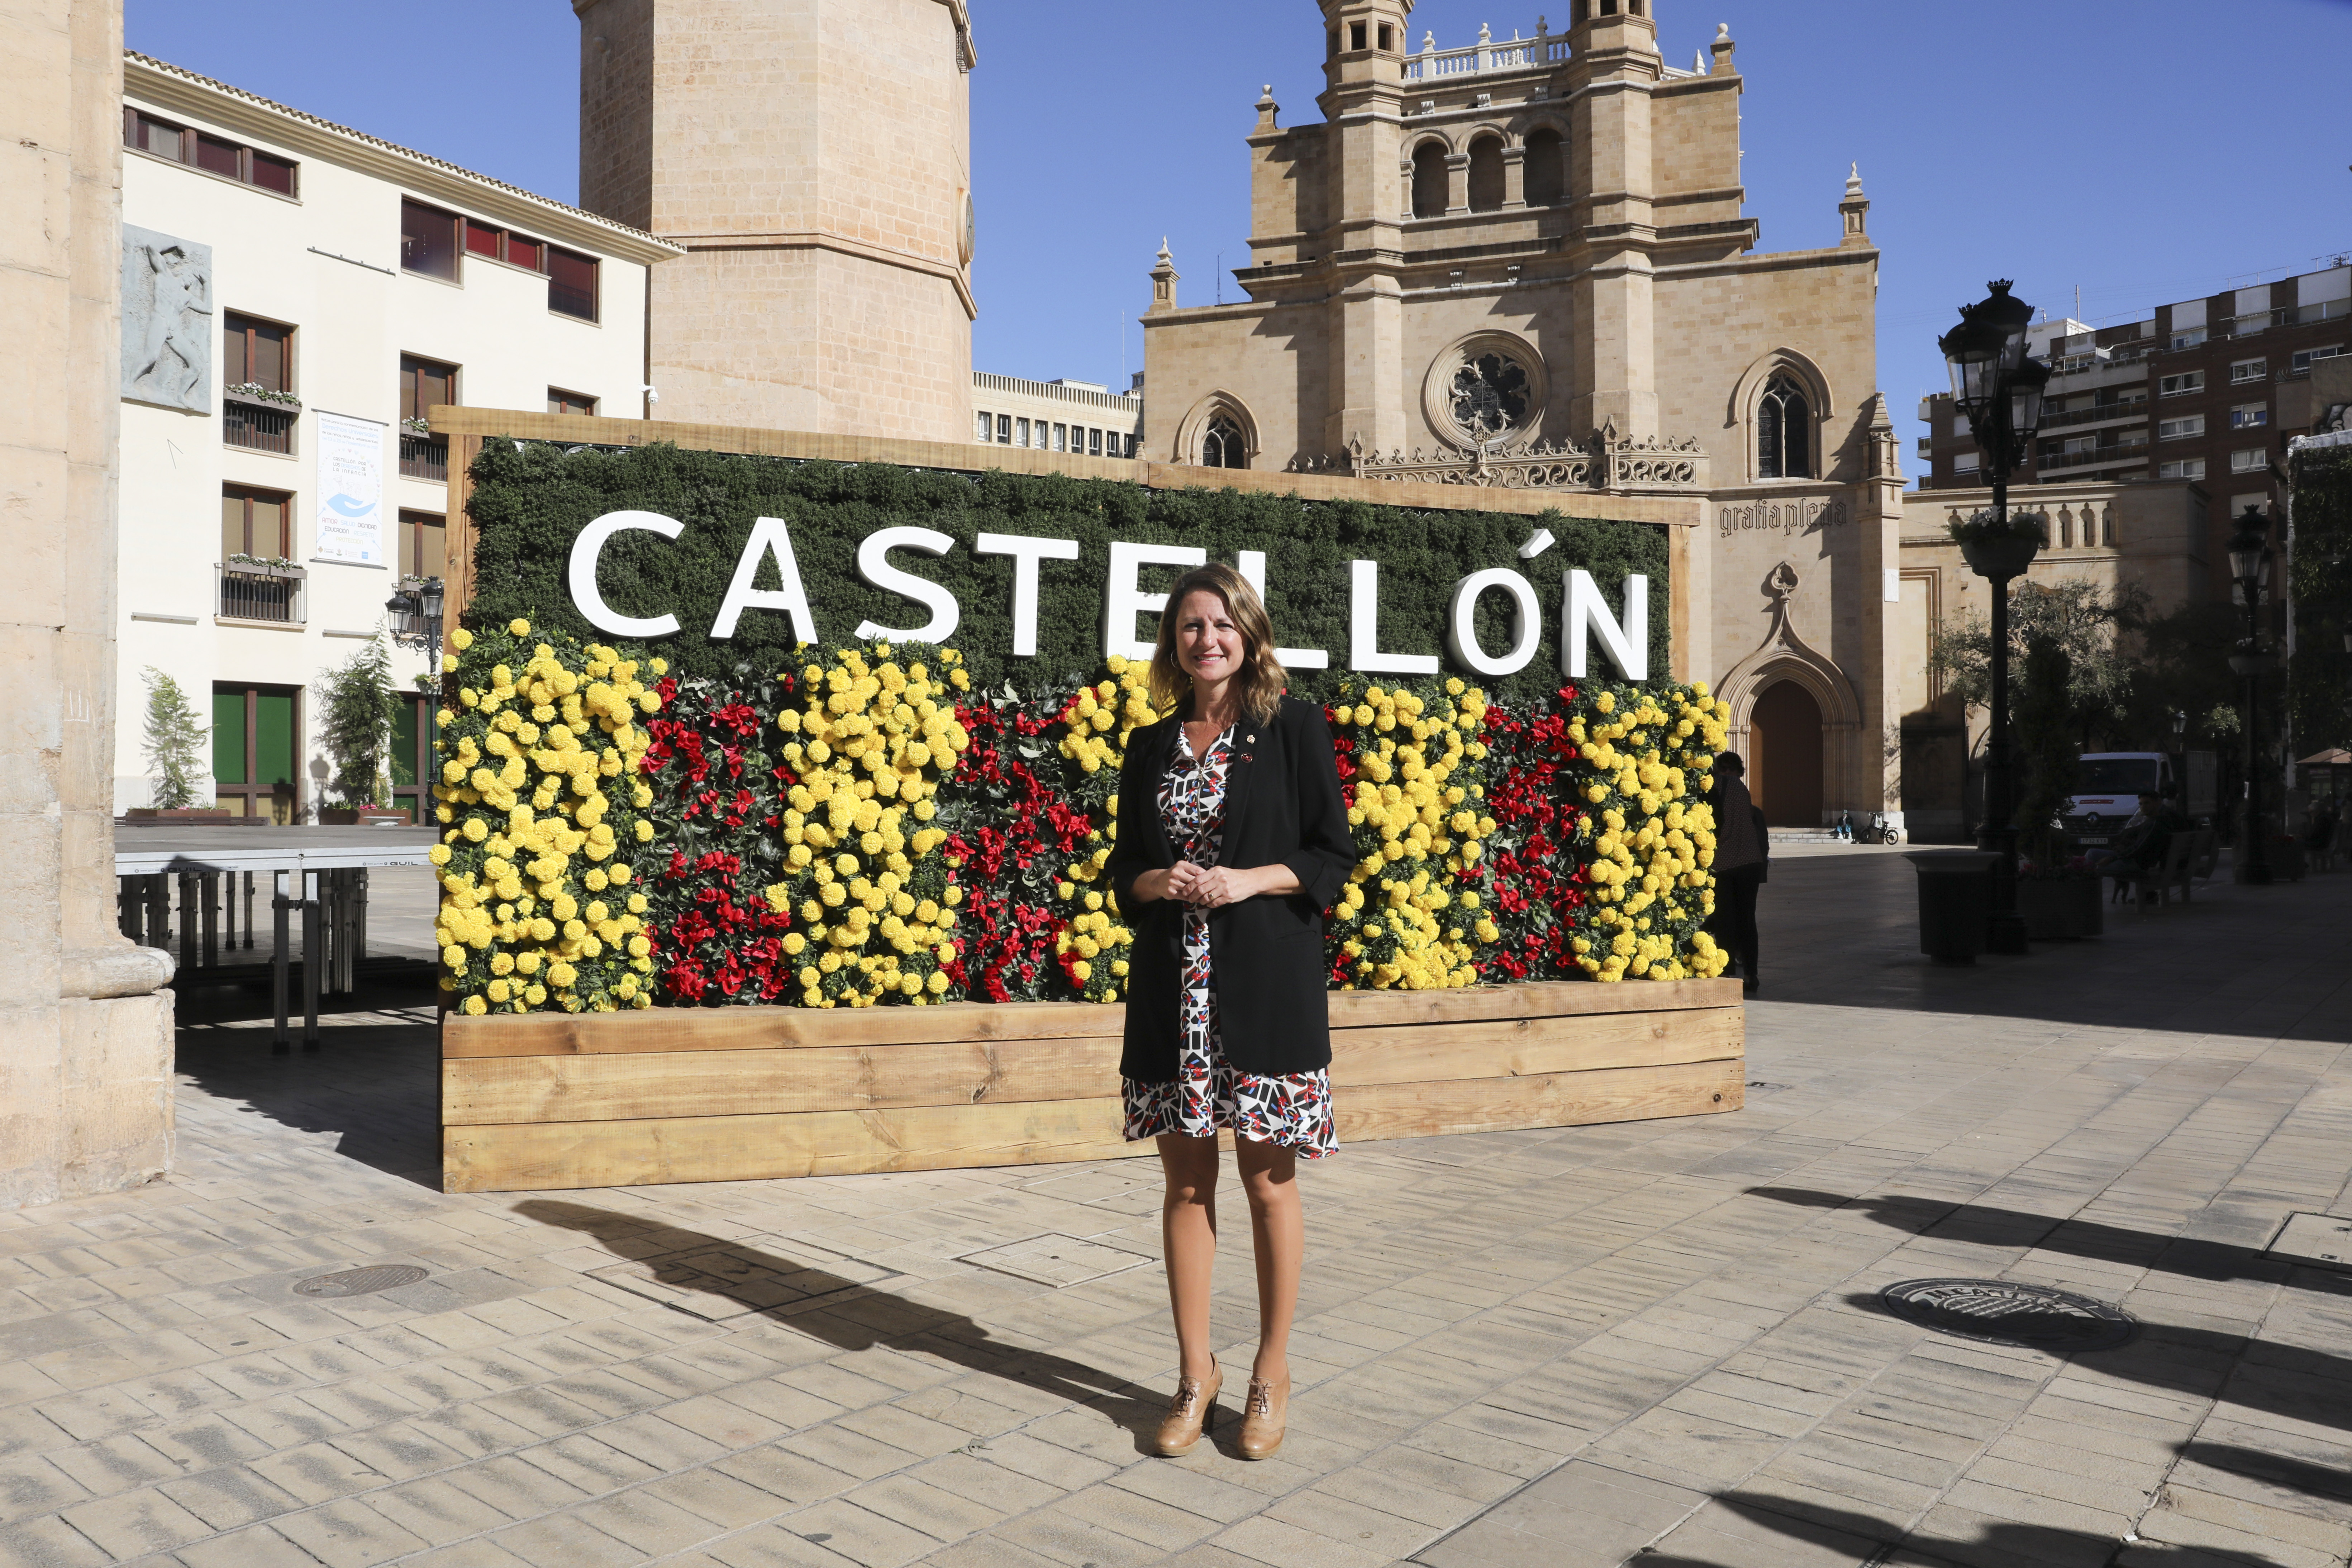 La Plaça Major de Castelló llueix nova imatge amb la instal•lació d'un nou tapís floral amb la doble denominació de la ciutat